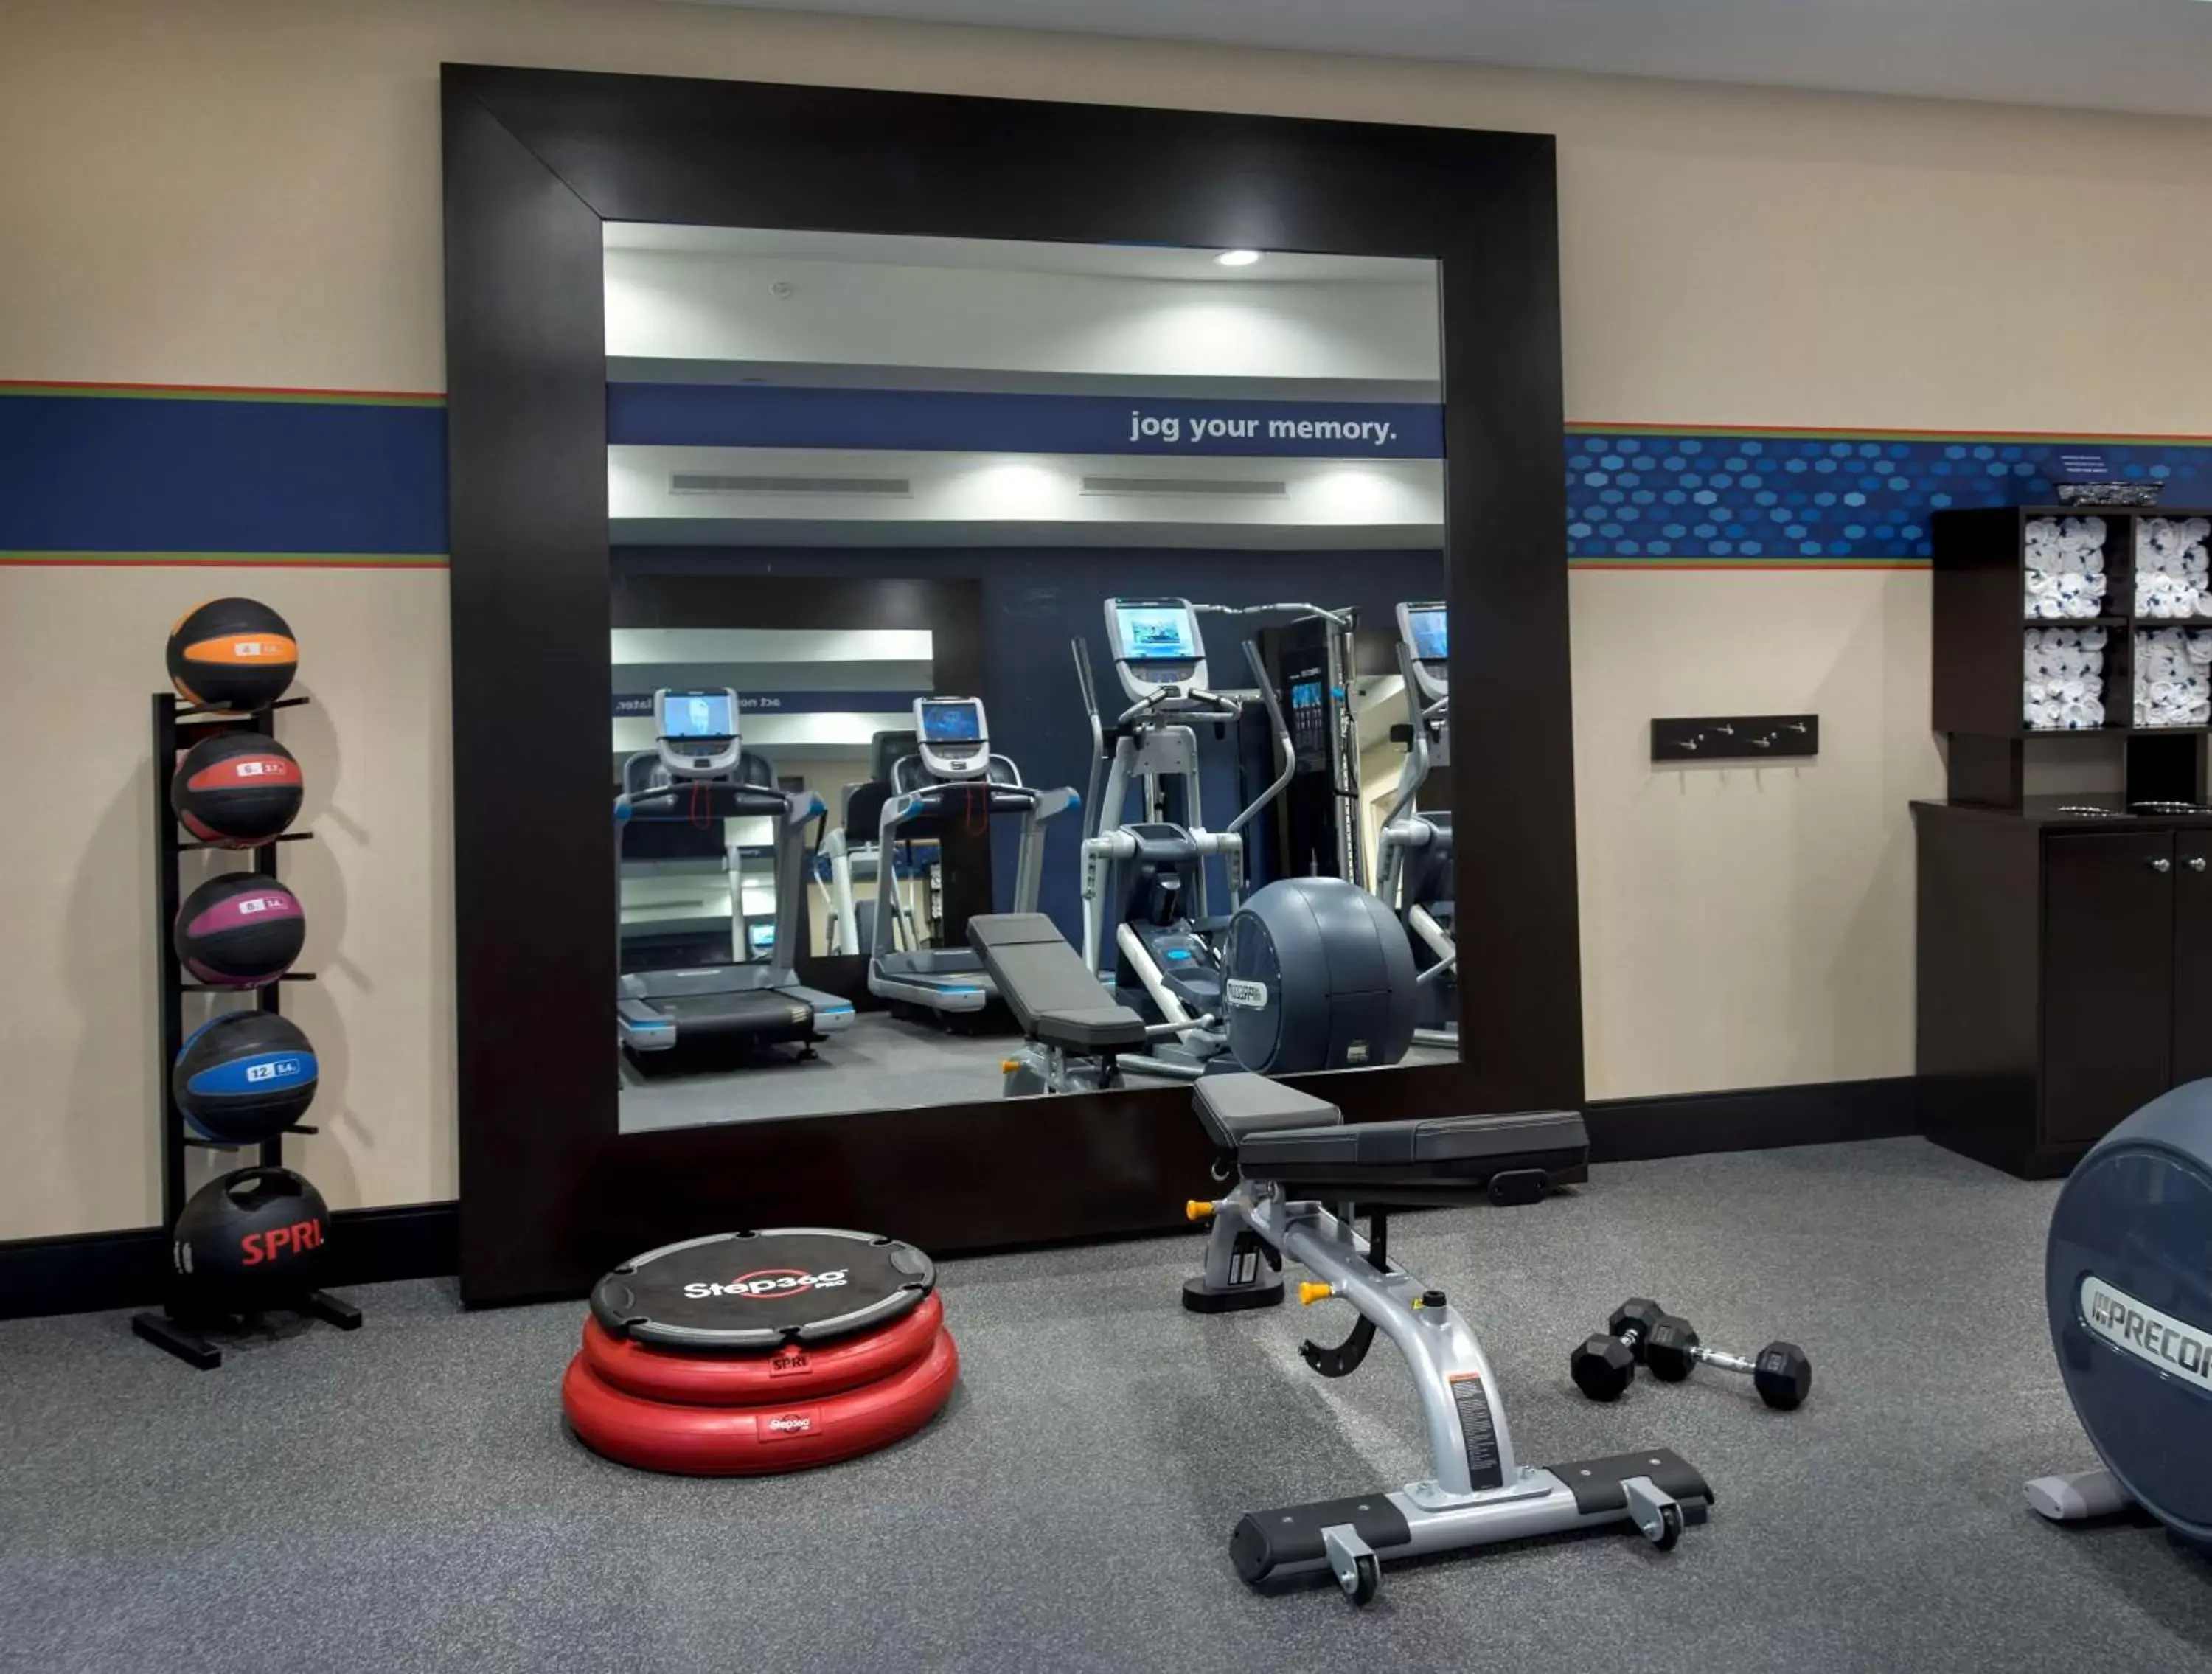 Fitness centre/facilities, Fitness Center/Facilities in Hampton Inn by Hilton New Paltz, NY